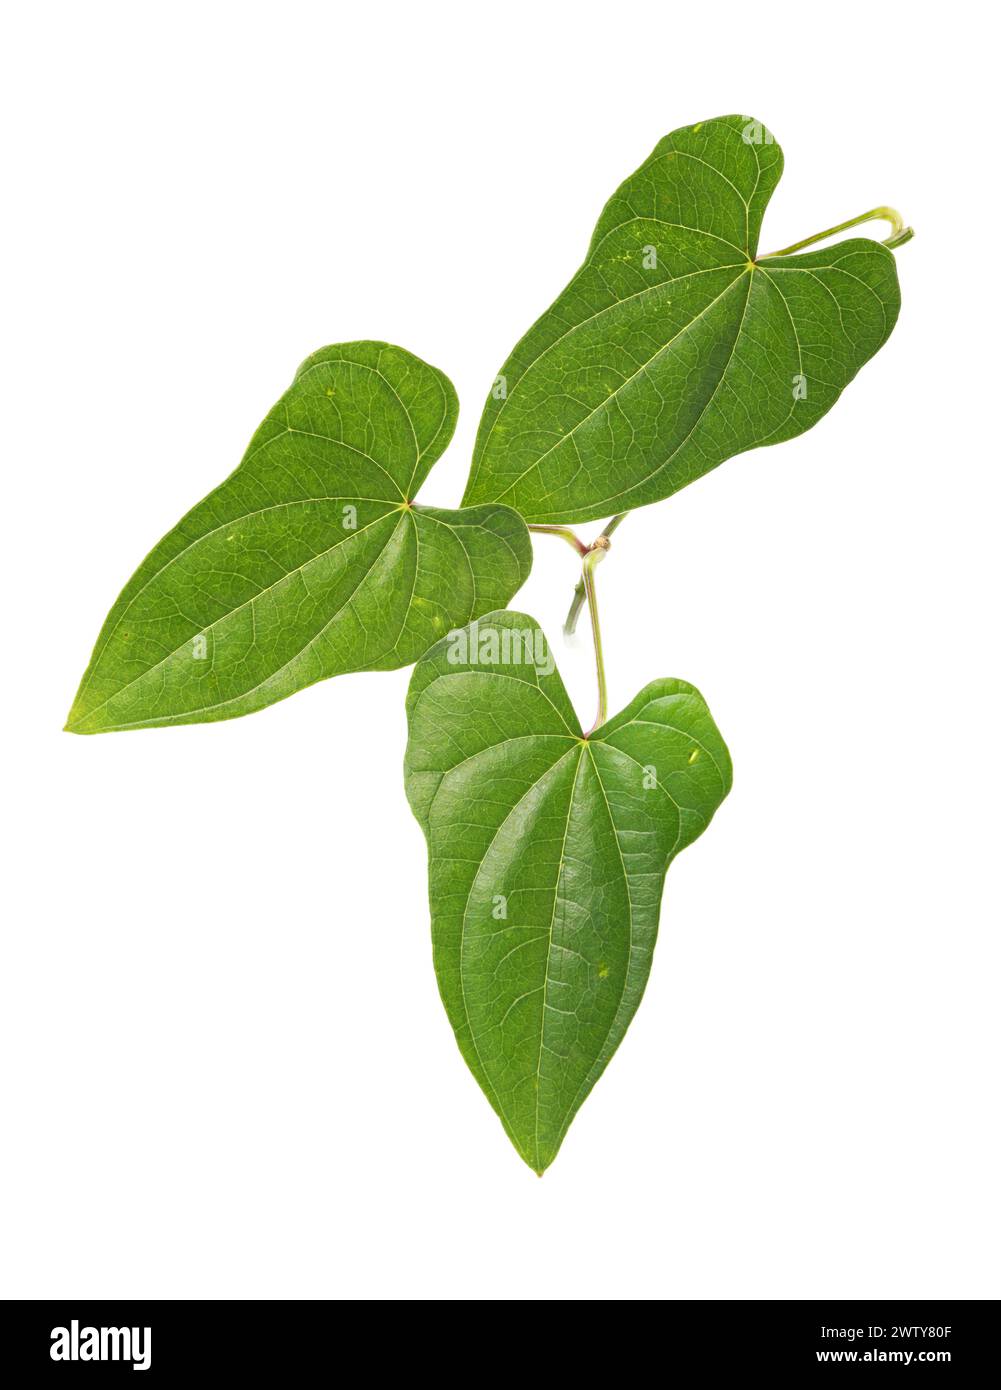 Chinese yam leaf on white background Stock Photo